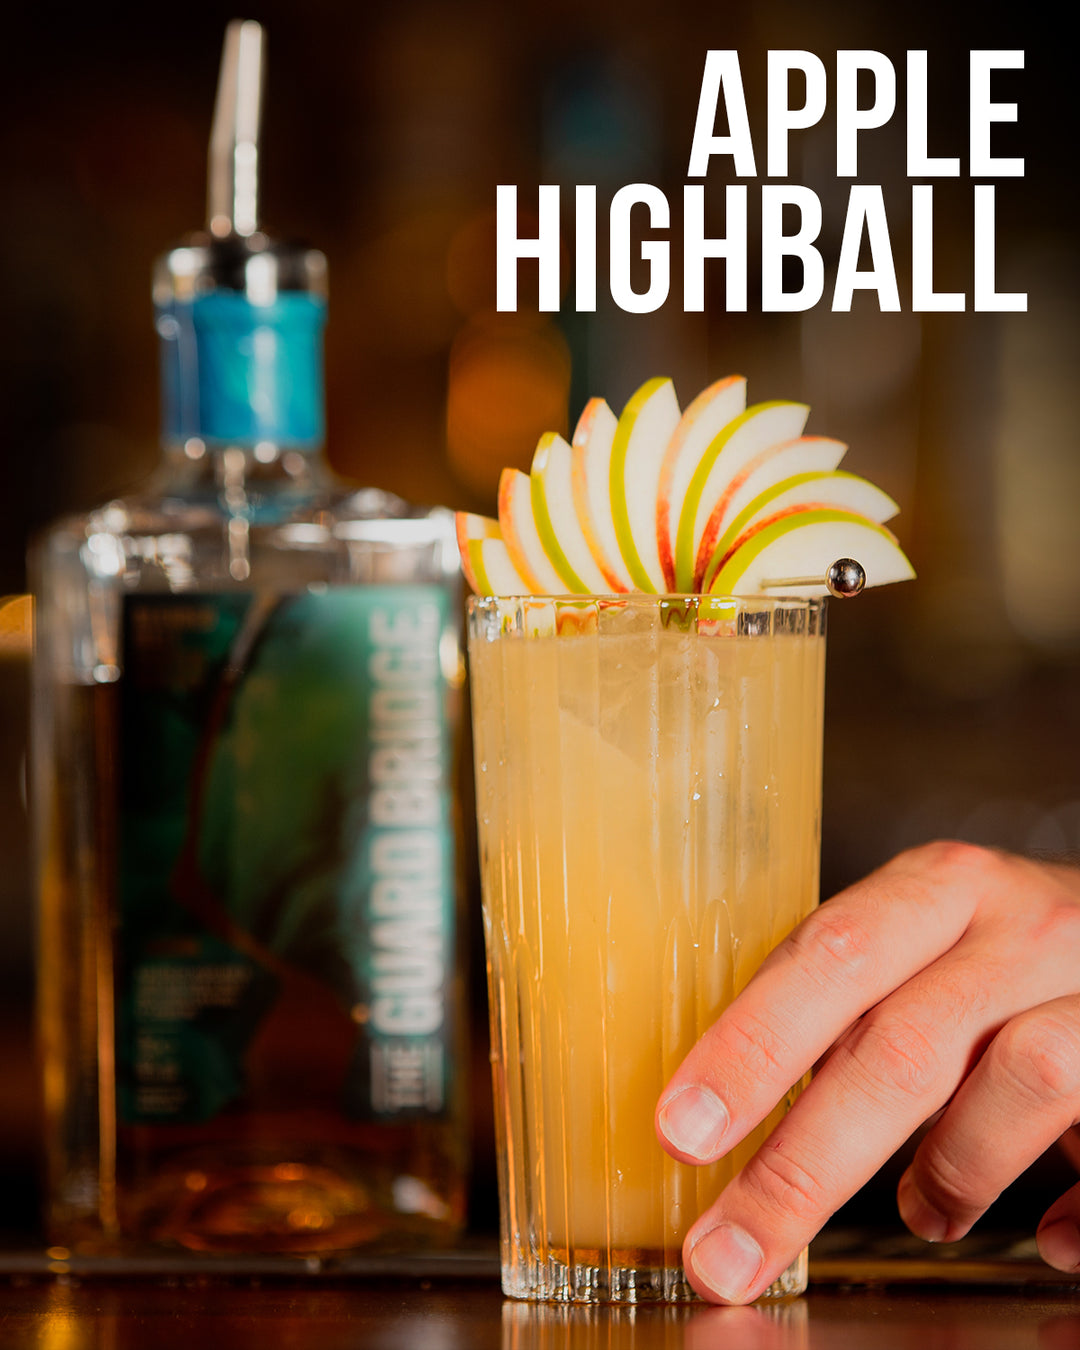 Apple Highball | The Guard Bridge Blended Malt Whisky